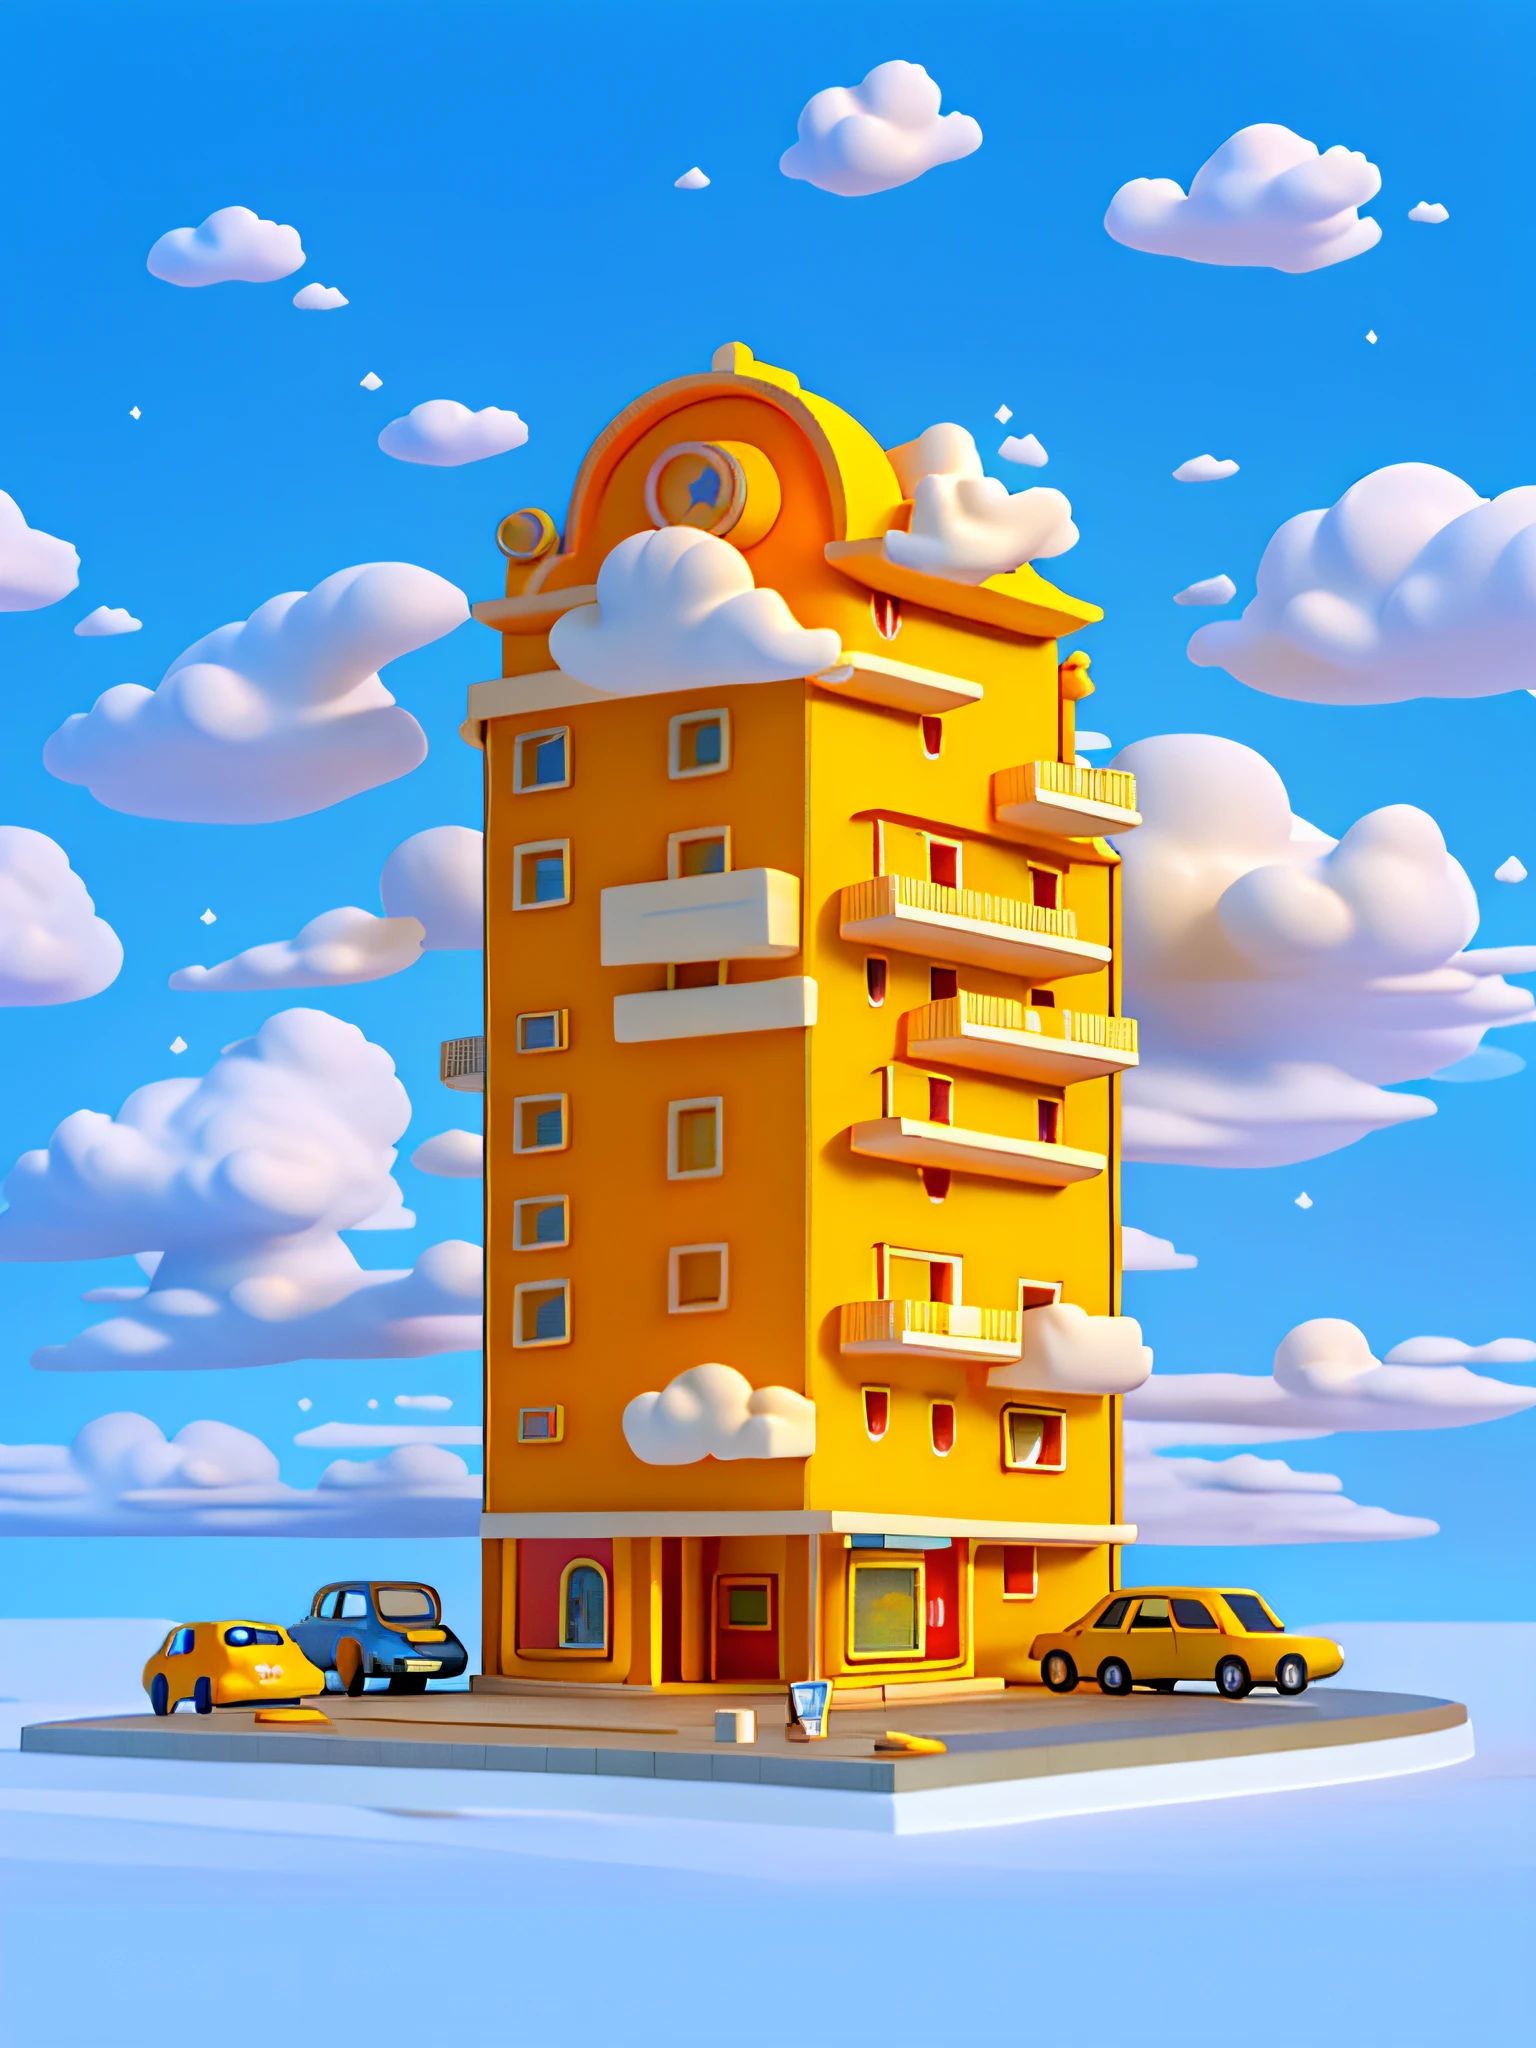 (傑作), (最高品質), (超詳細) シンプルな漫画のホテルの建物, ホテル低層ビル, おもちゃのモデル, 雲, 車, 上面図, きれいな背景, 淡黄色と淡オレンジ色の建物,